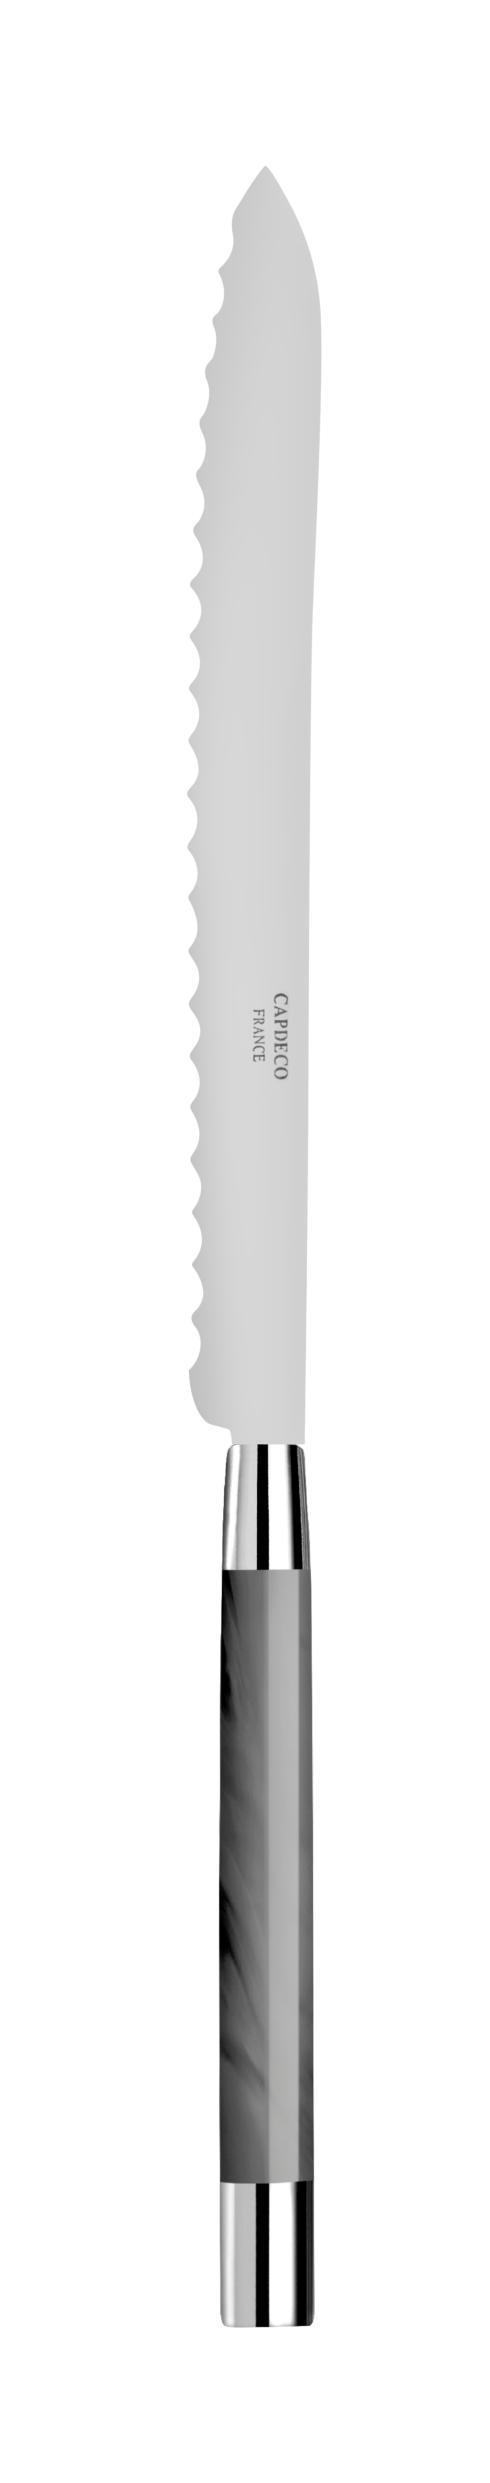 Bread knife - $75.00